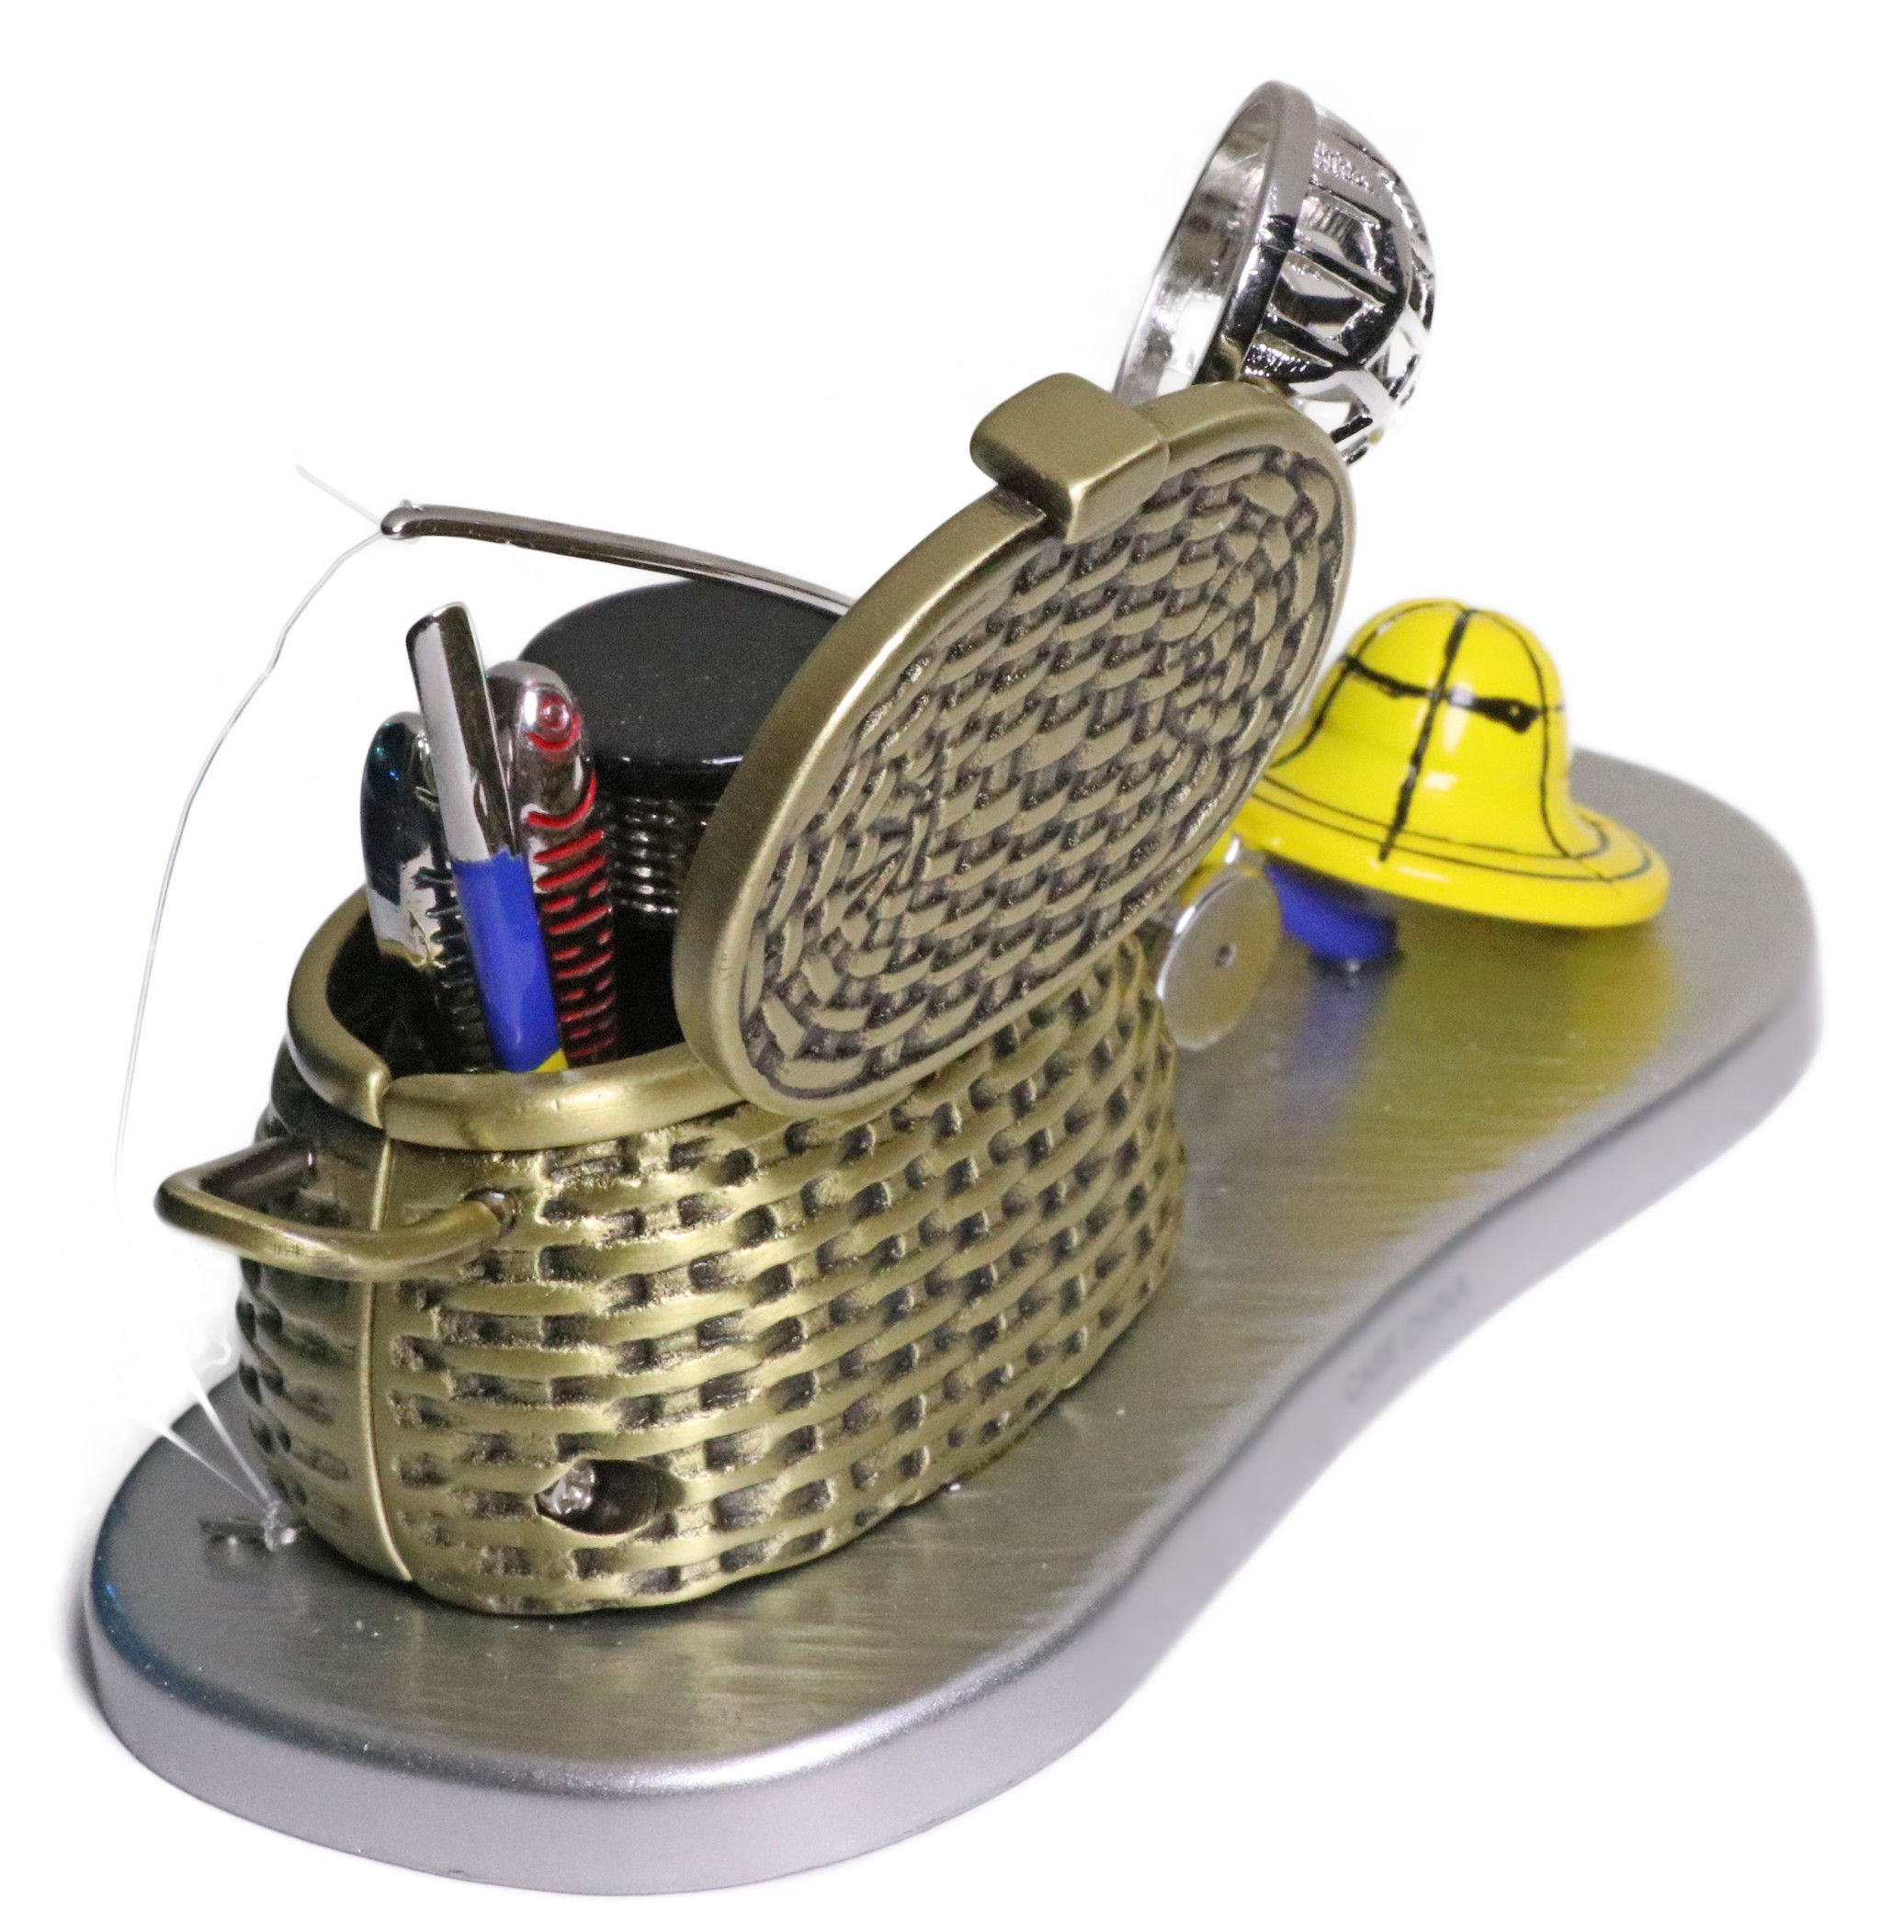 Fishing Basket Ornament, Mini Fishing Basket, Fisherman Ornament